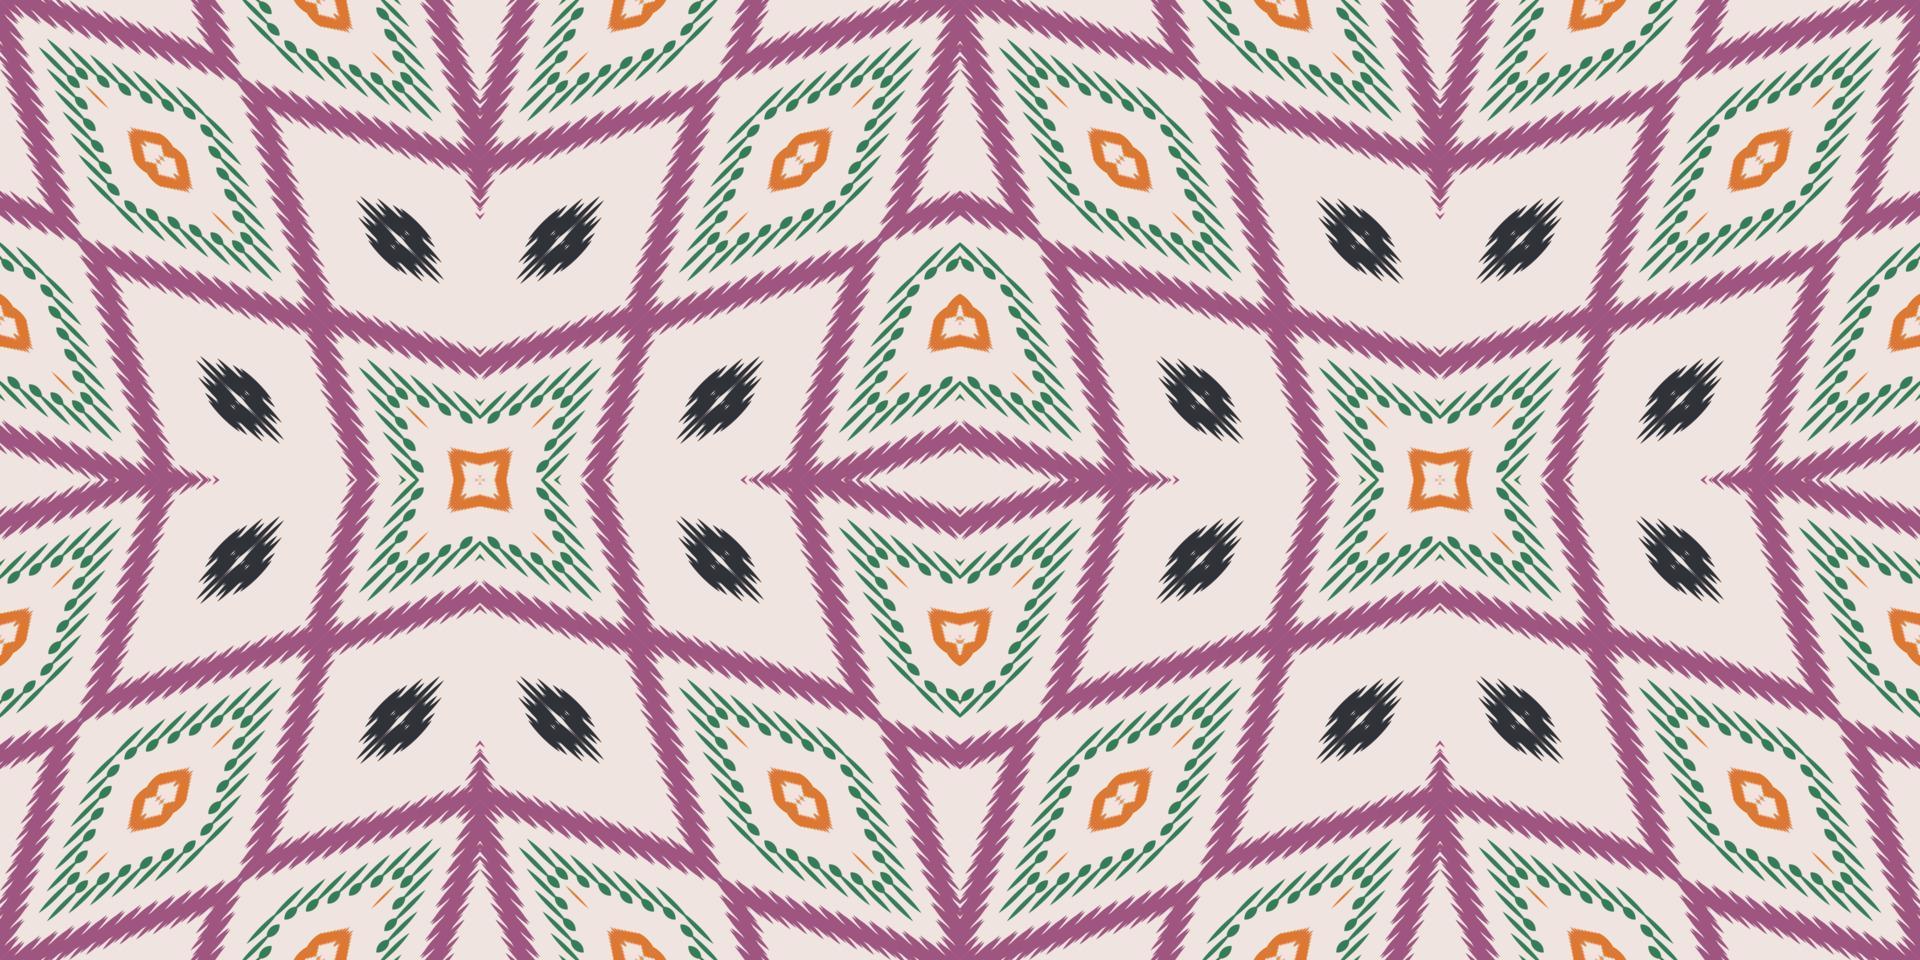 patrón transparente africano tribal floral ikat. étnico geométrico batik ikkat vector digital diseño textil para estampados tela sari mughal cepillo símbolo franjas textura kurti kurtis kurtas